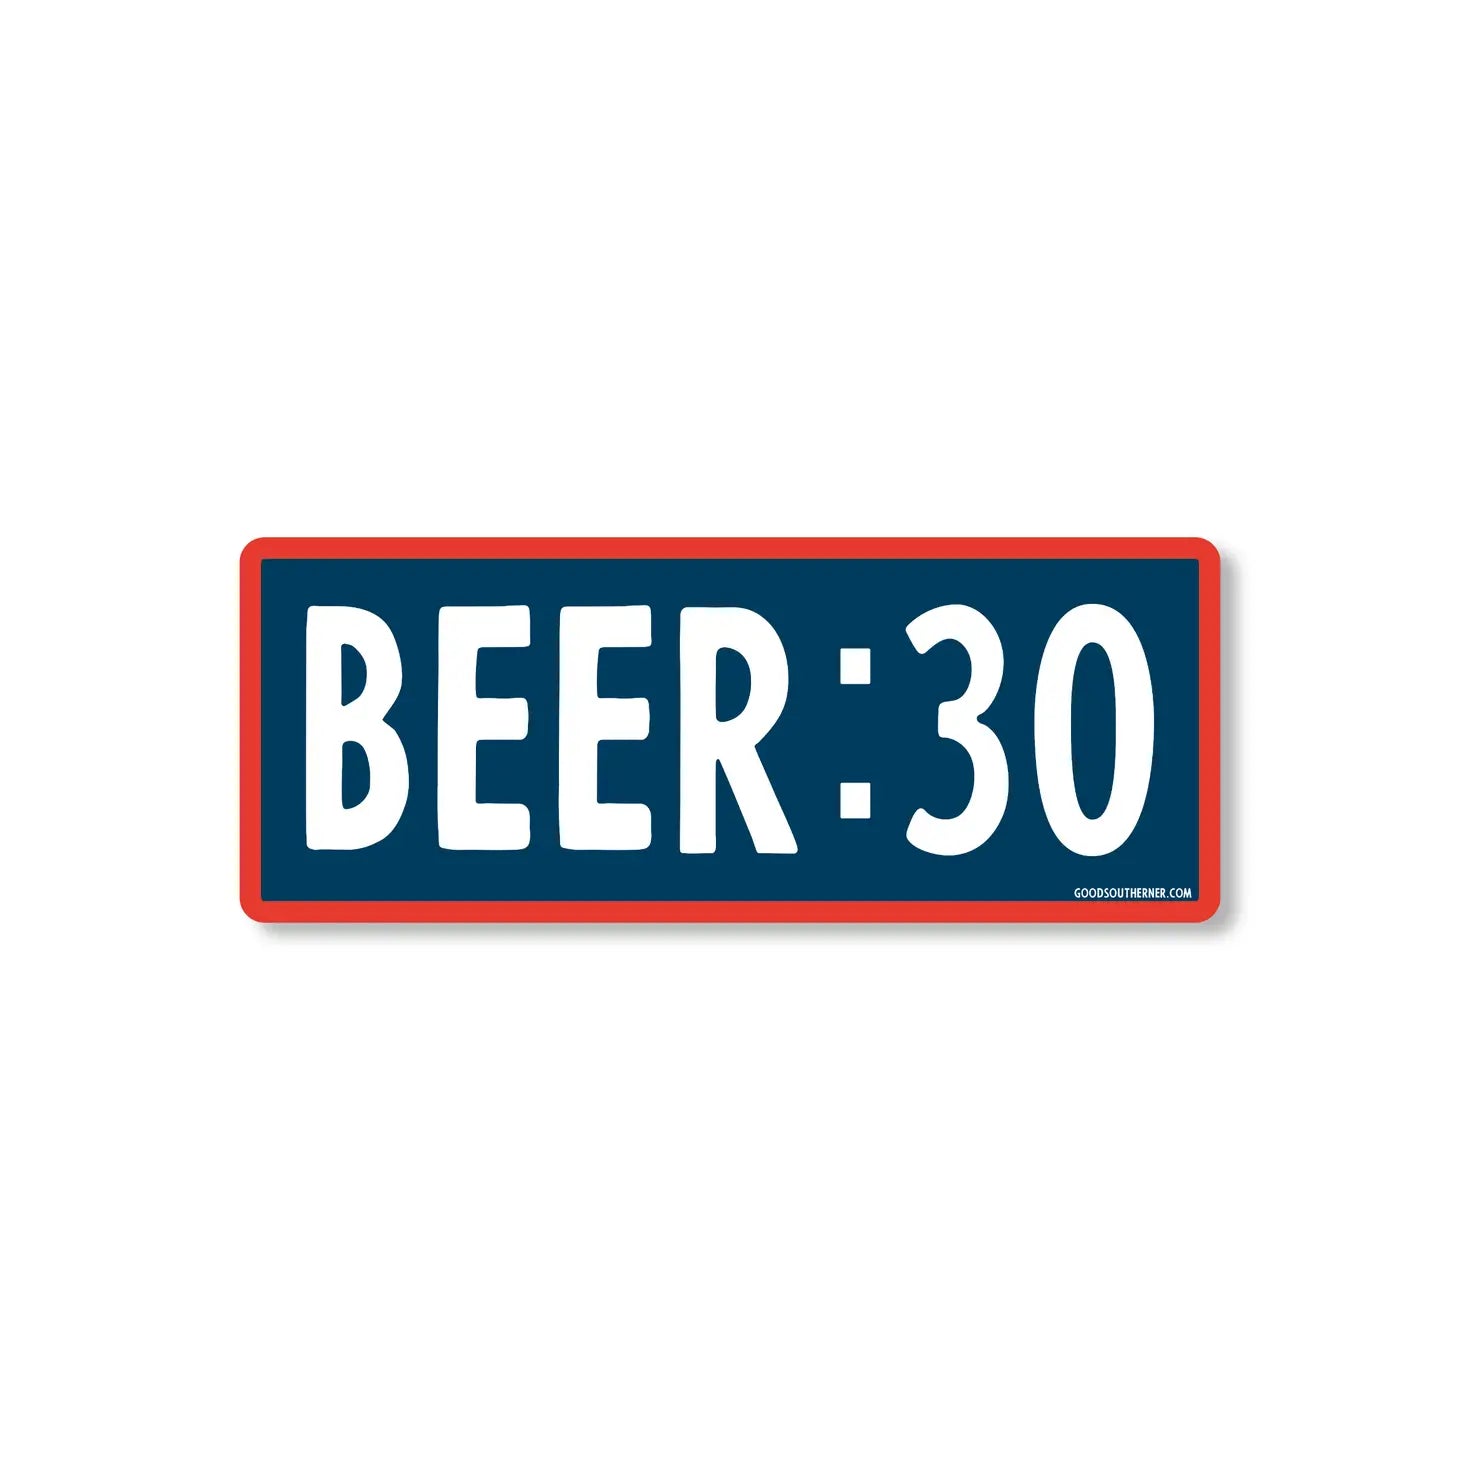 Beer: 30 Sticker *